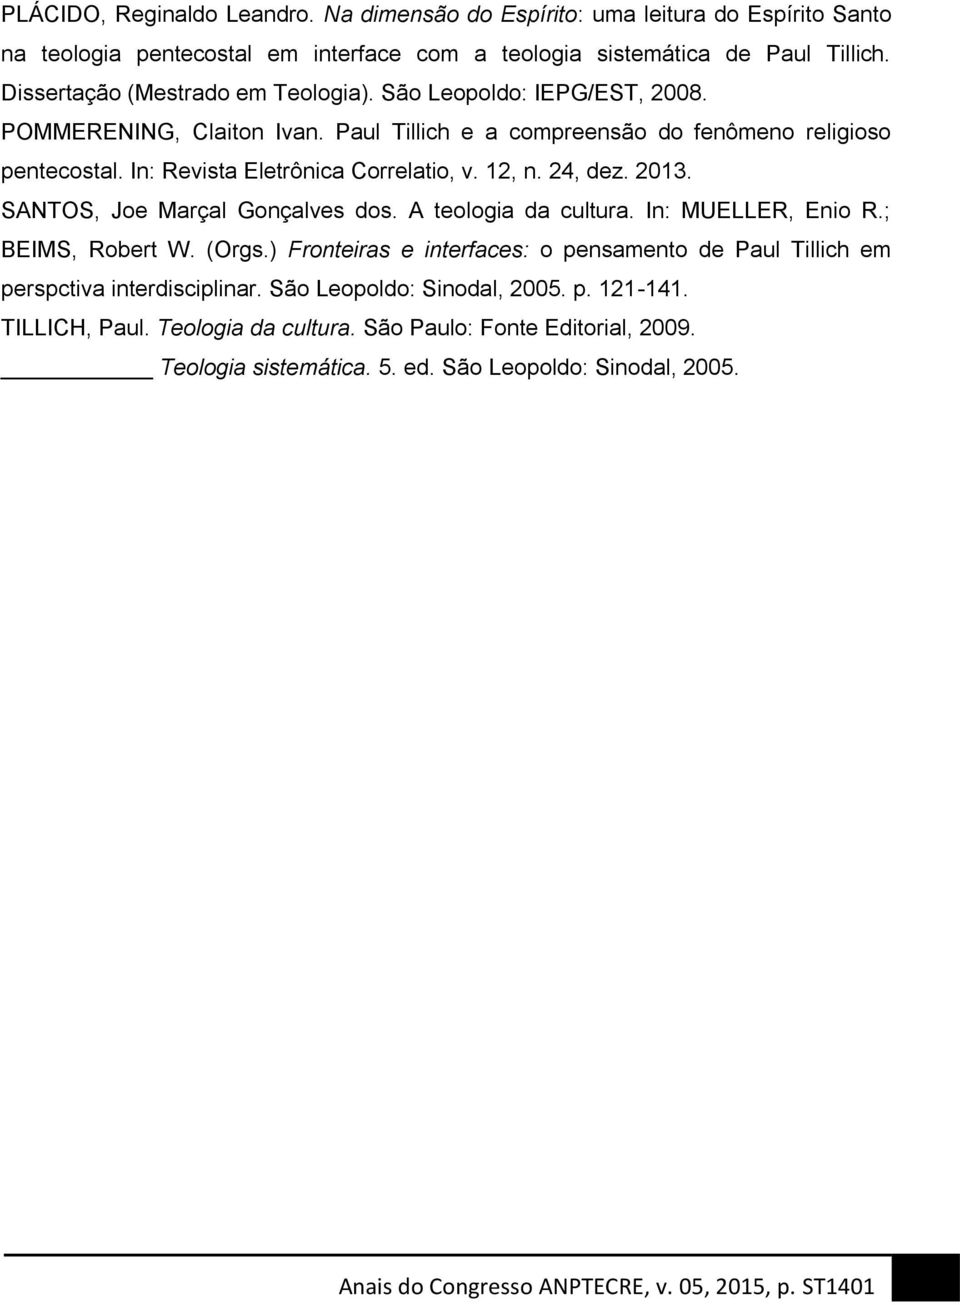 In: Revista Eletrônica Correlatio, v. 12, n. 24, dez. 2013. SANTOS, Joe Marçal Gonçalves dos. A teologia da cultura. In: MUELLER, Enio R.; BEIMS, Robert W. (Orgs.